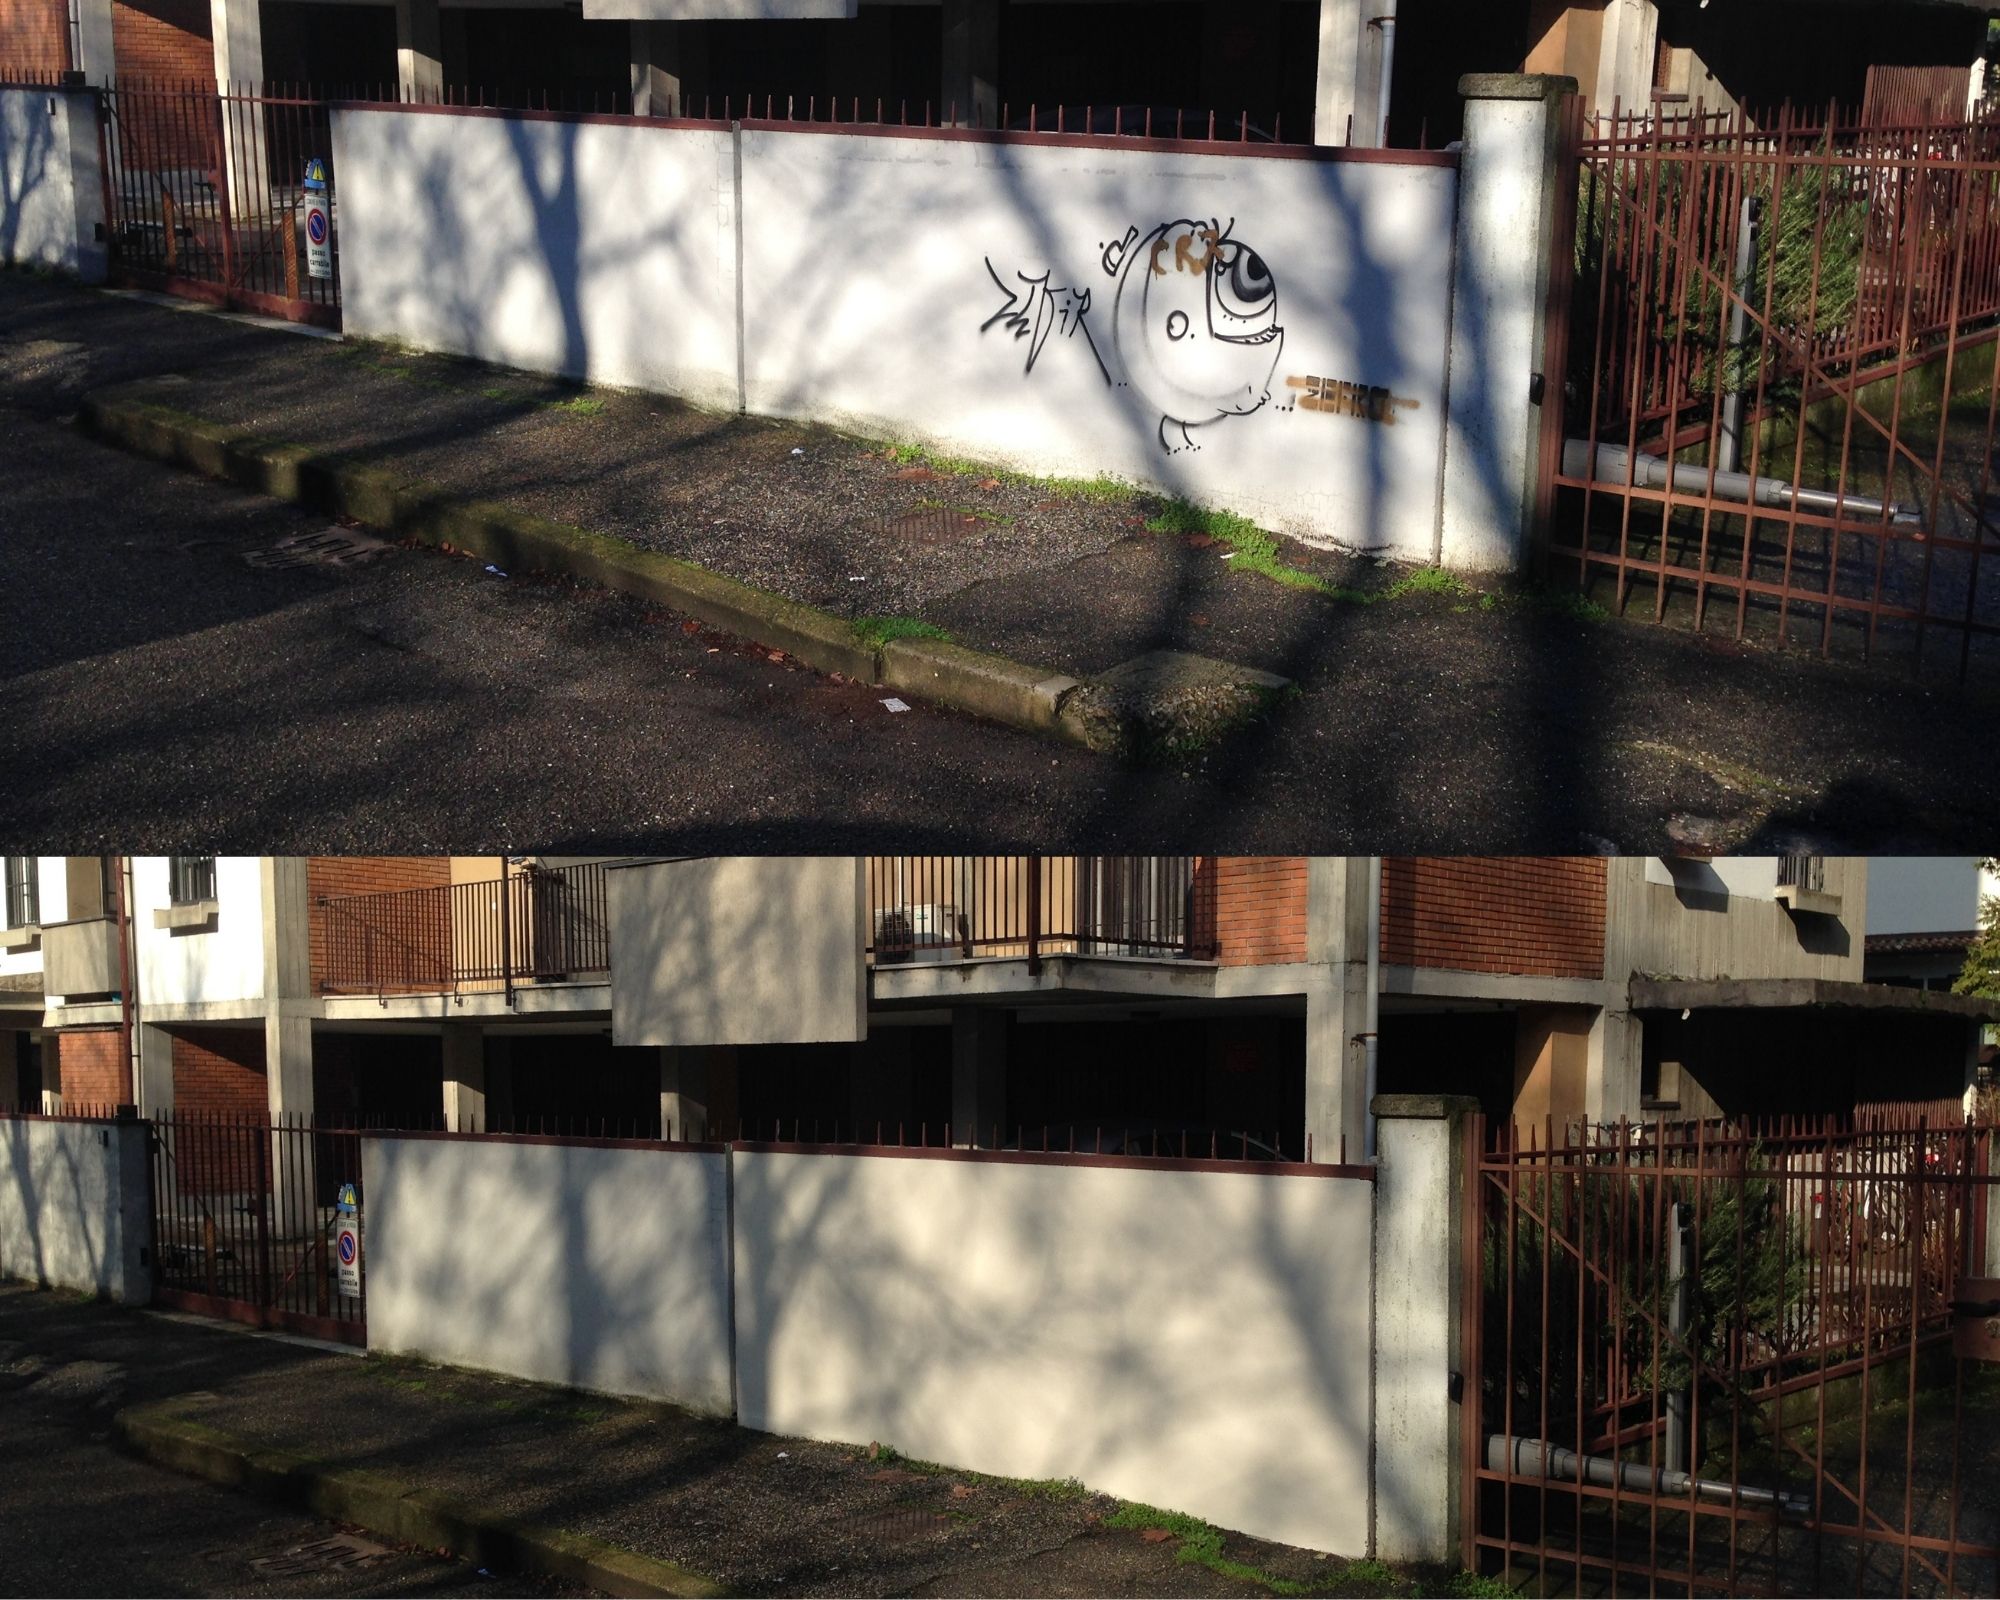 Eliminazione di un graffito da un muro di una casa